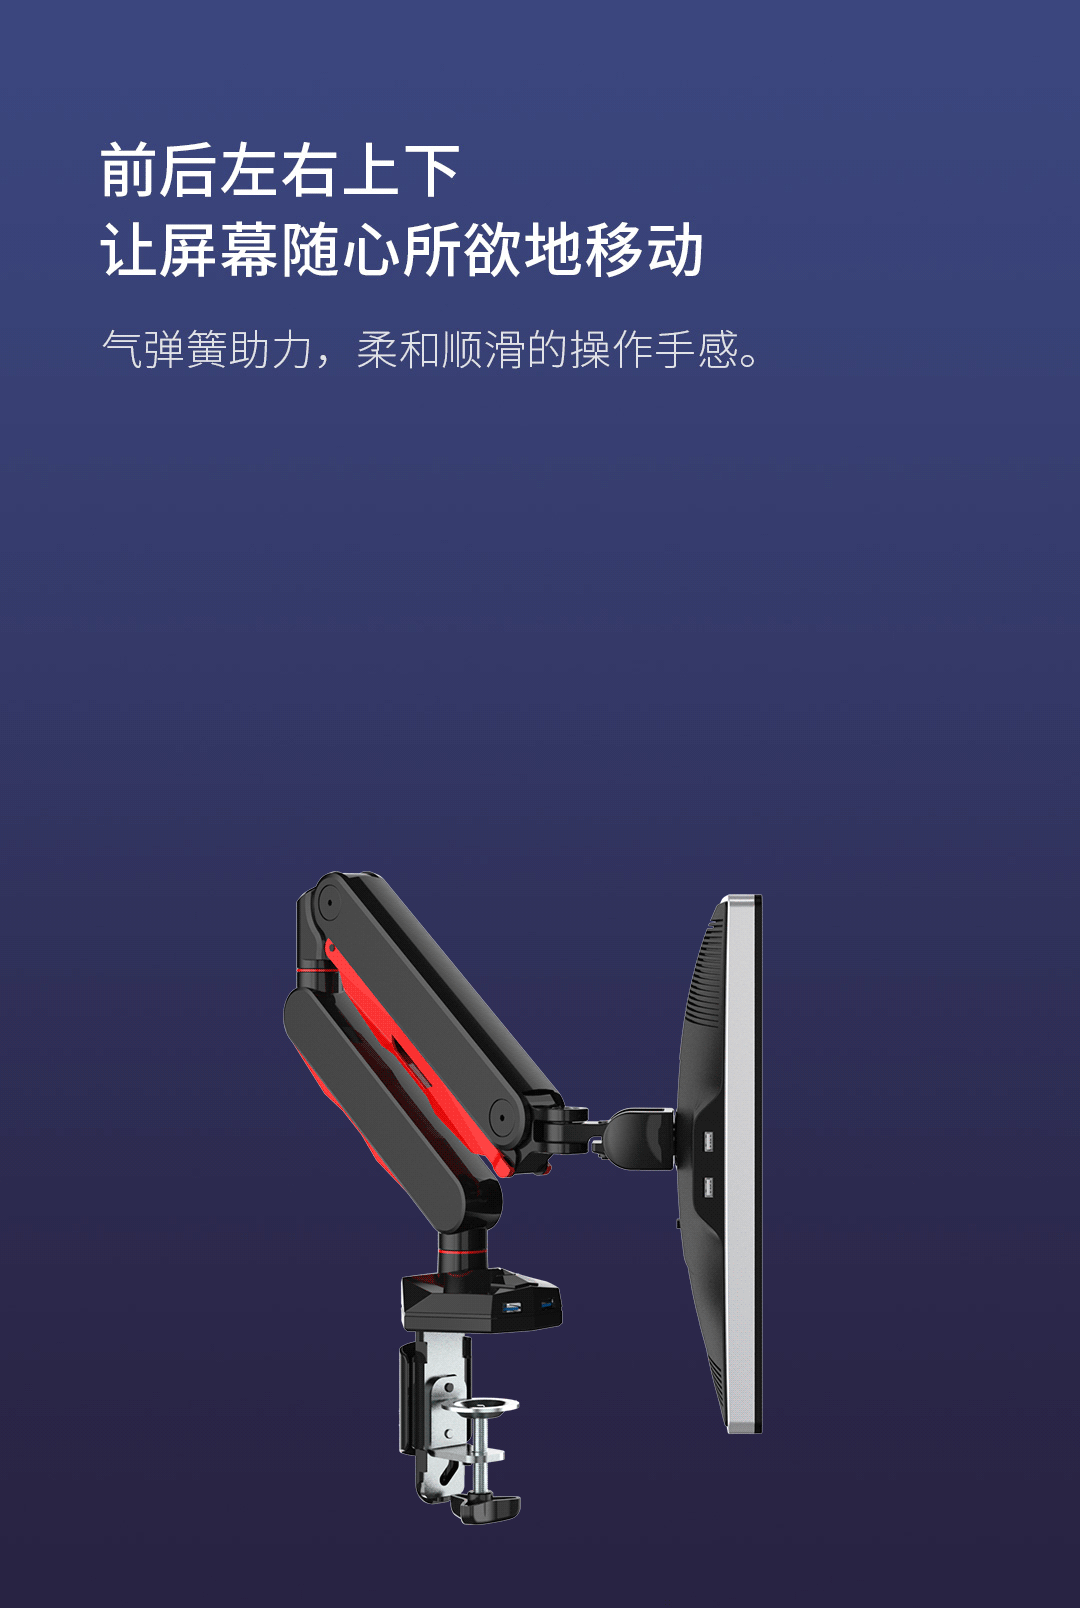 Xiaomi ra mắt chân đế màn hình xoay 360°, chịu tải 9kg, siêu bền ảnh 4